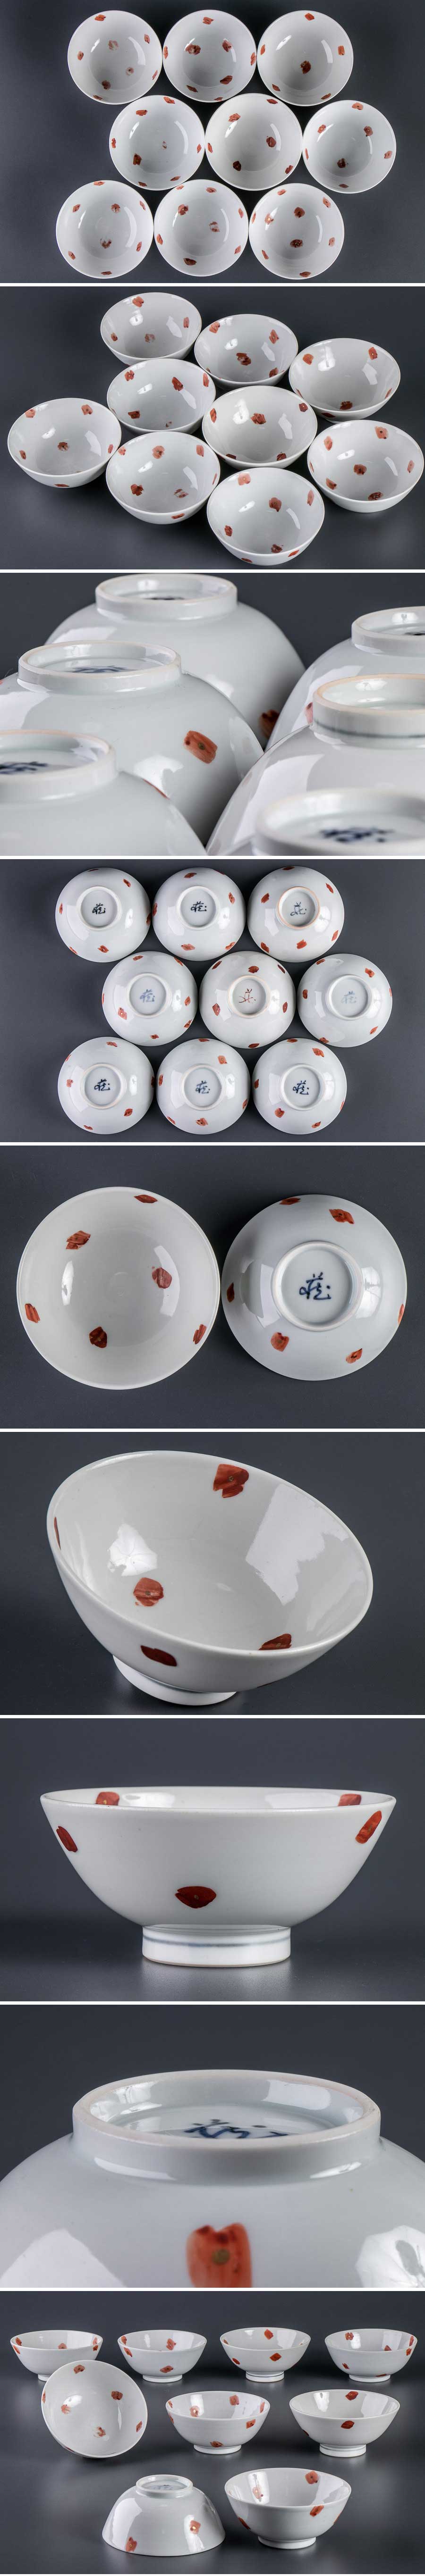 安い買取『 九谷 古川章蔵 赤絵茶碗 9客 9860』 9枚組 料亭 日本料理 懐石 和食器 焼き物 色絵磁器